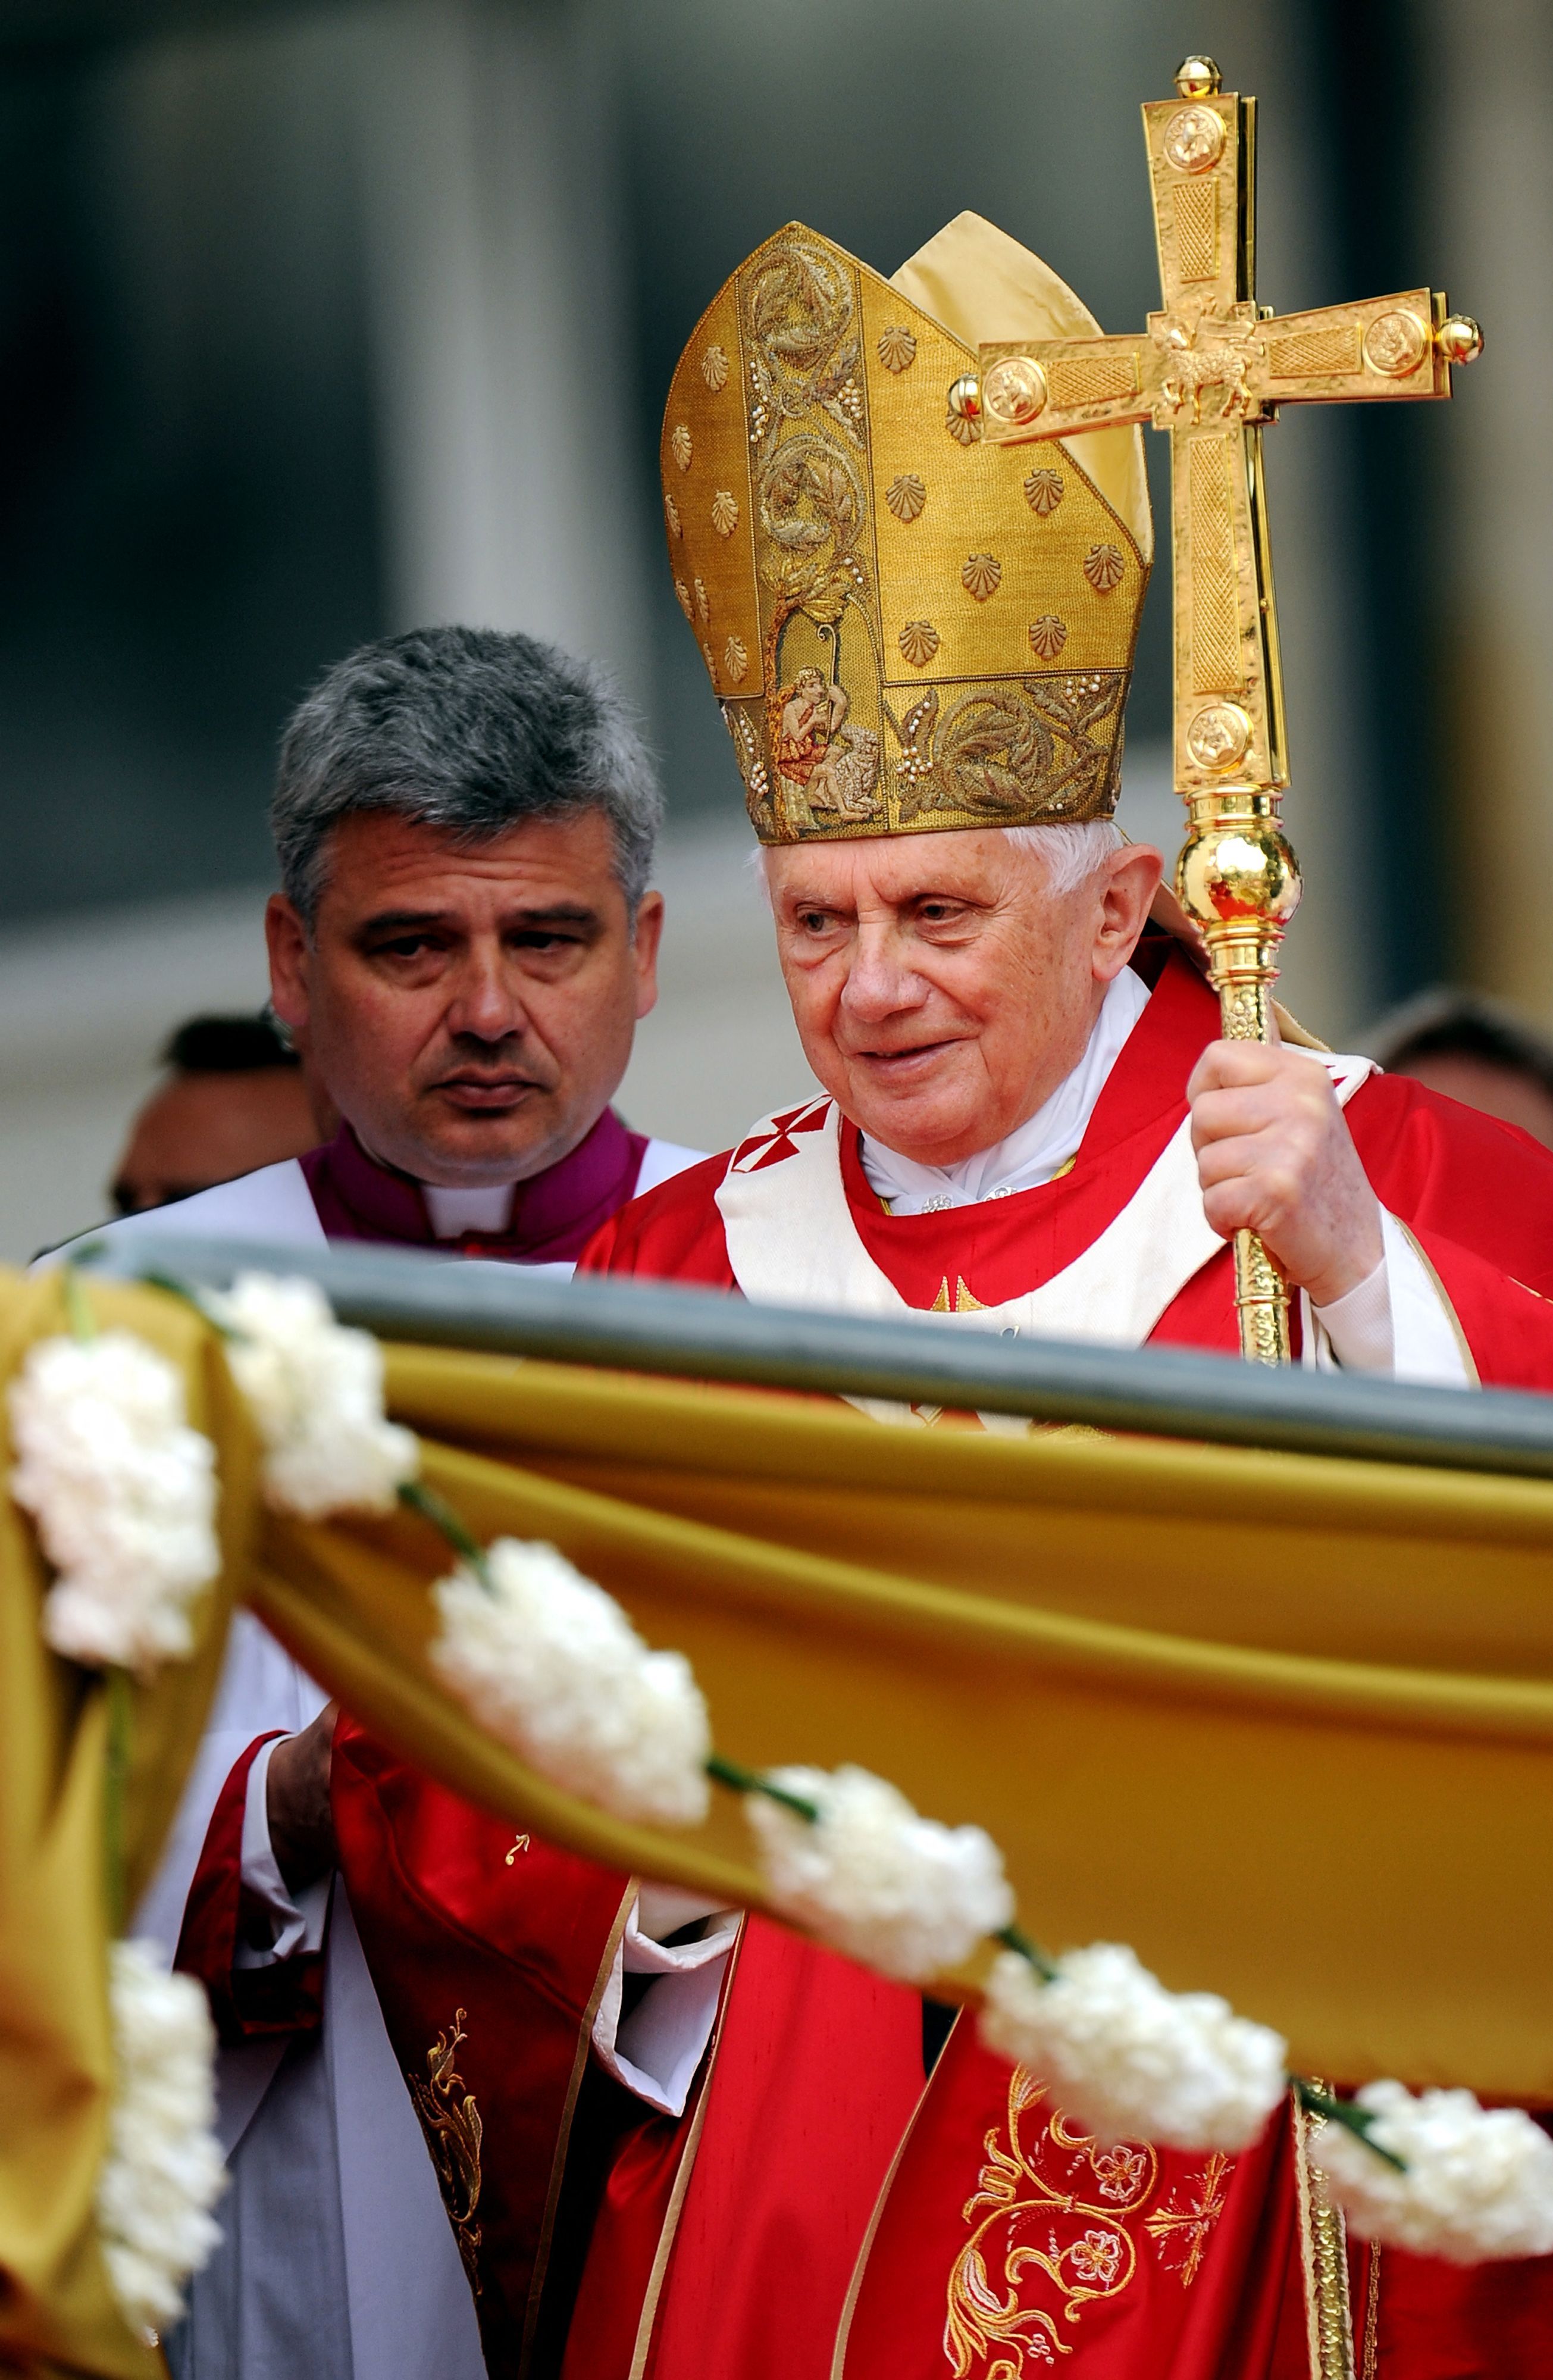 Papst Benedikt XVI. feiert in Portugal, um an die letzte Messe zu erinnern, wo riesige Menschenmengen den Papst unterstützten, während er gegen einen Priestermissbrauchsskandal kämpfte.